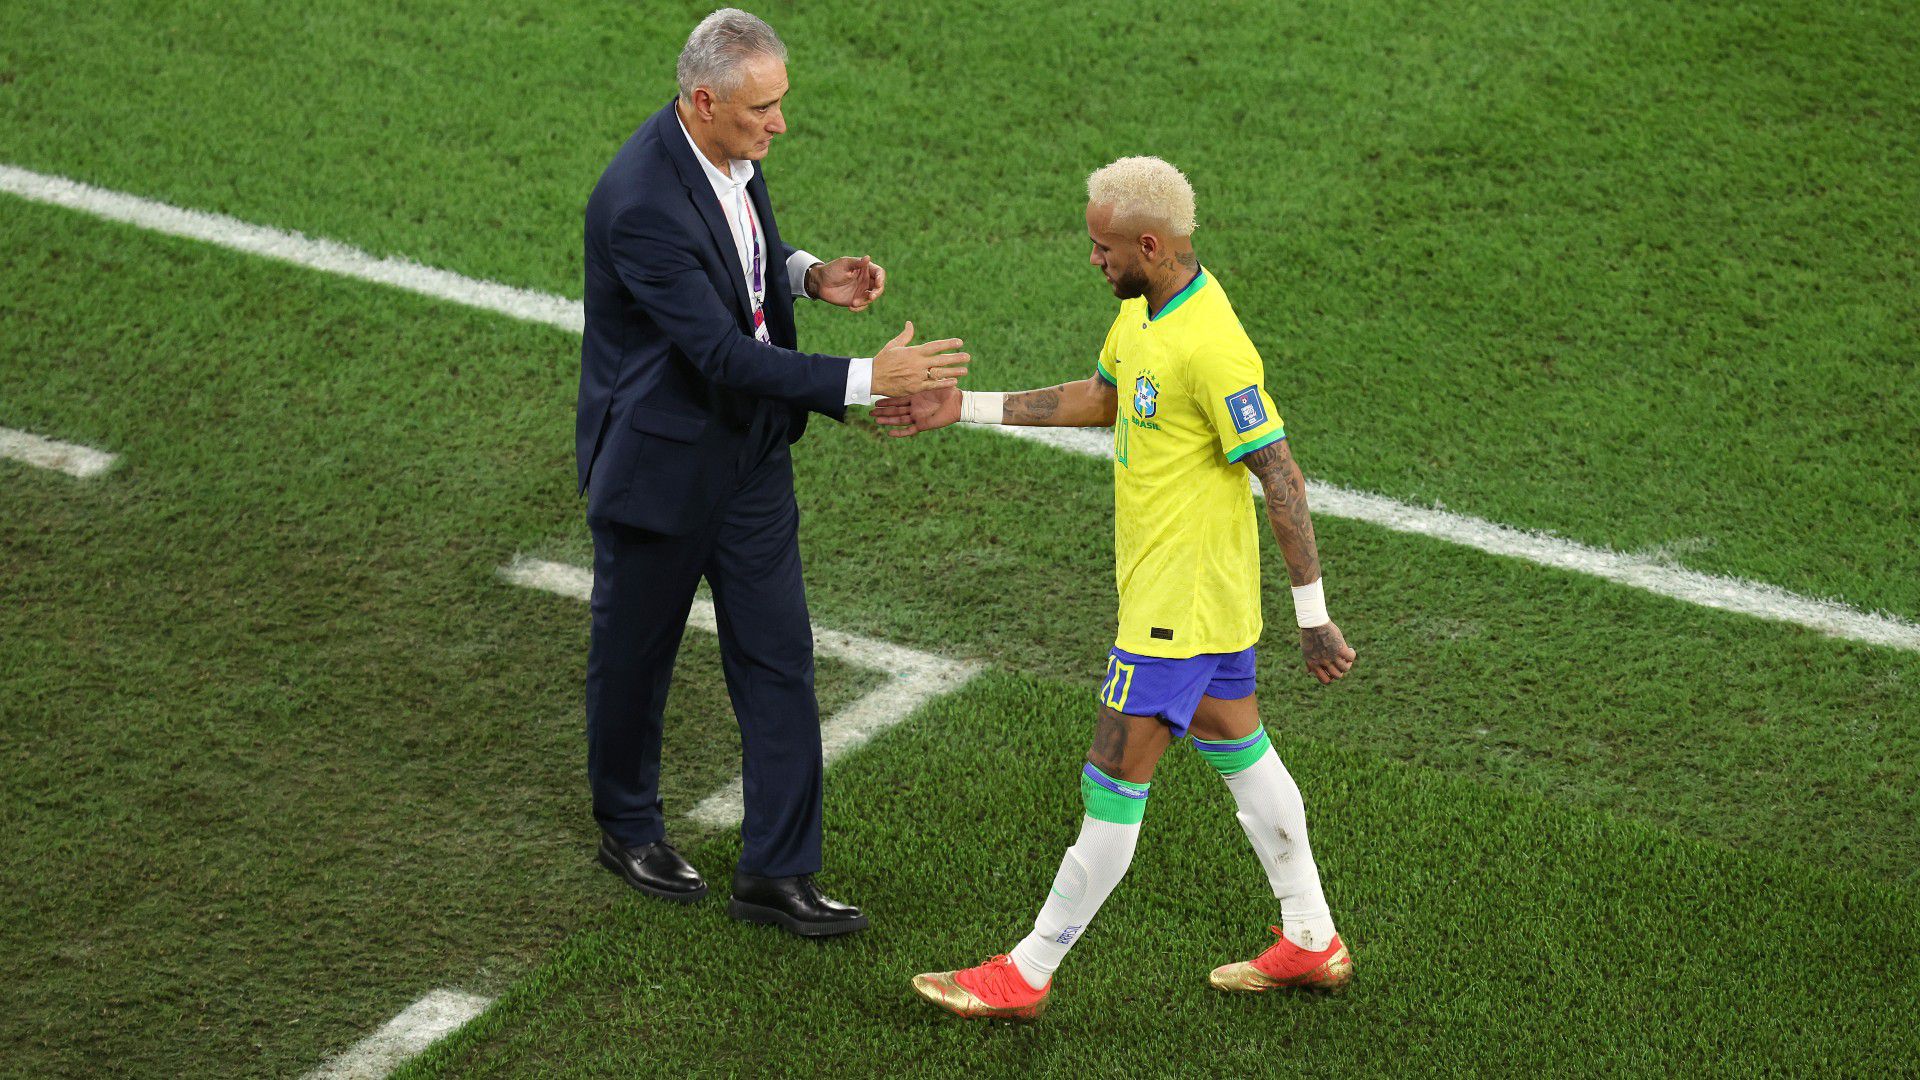 VIDEÓ: belefér ez? A brazil kapitány „galambtánccal” ünnepelte a gólt – az MU legendája kiakadt